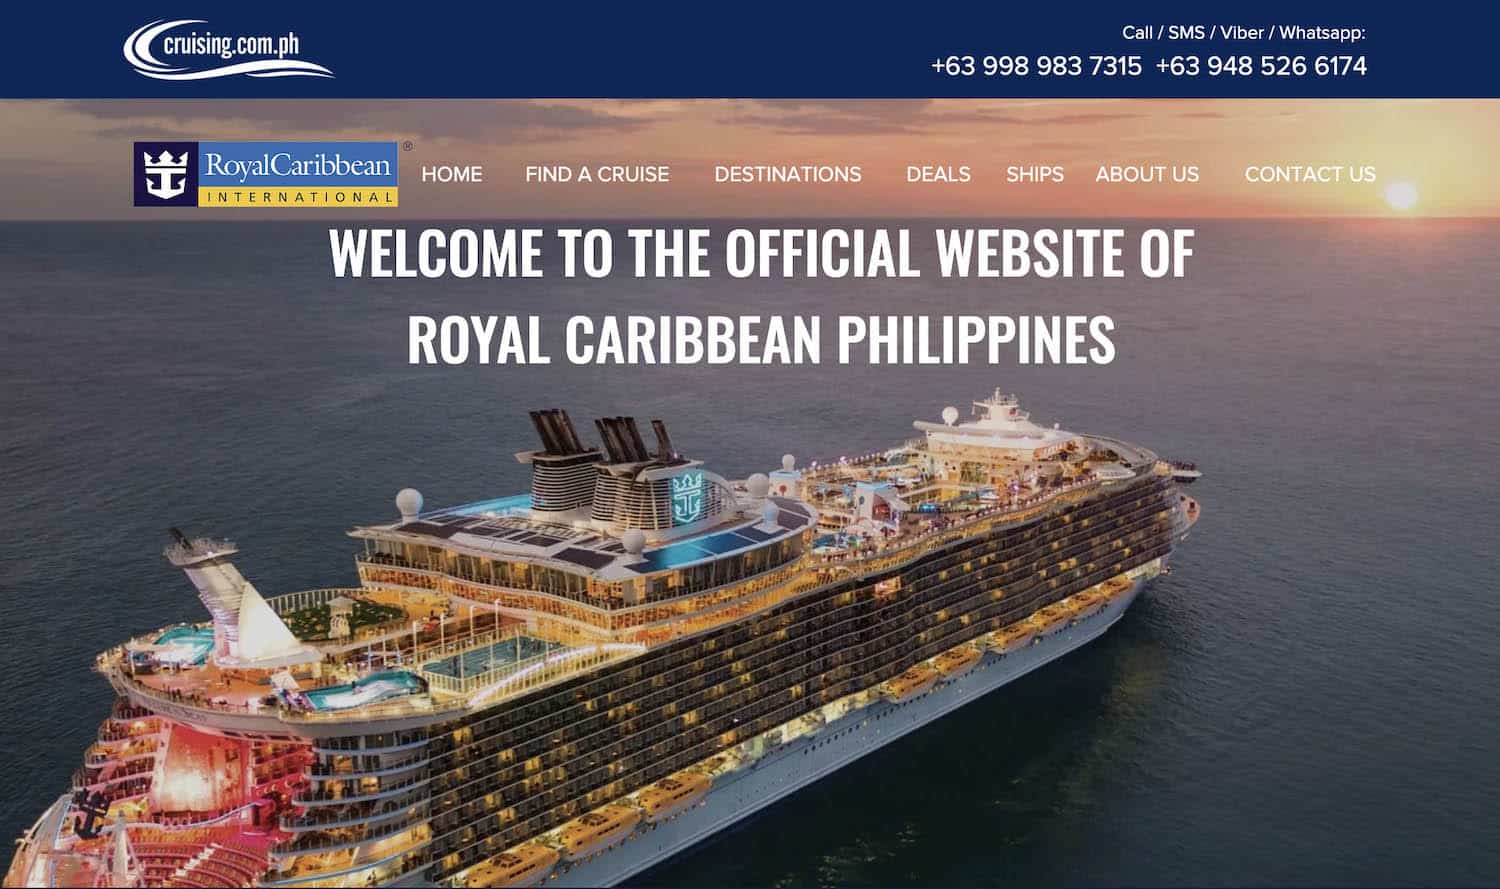 菲律宾皇家加勒比群岛网站